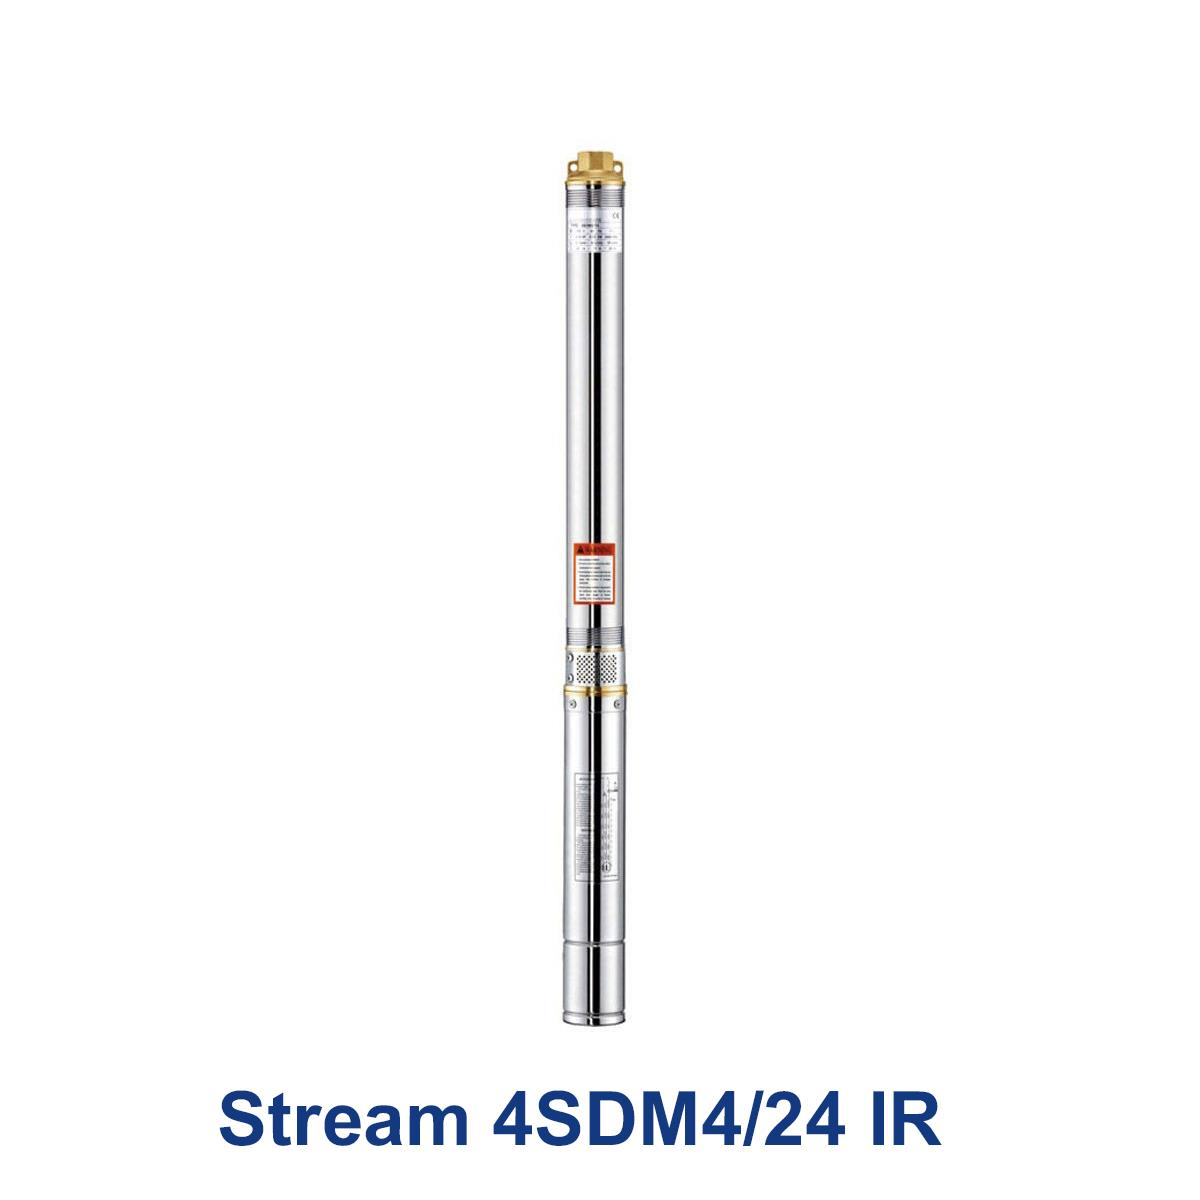 Stream-4SDM4-24-IR